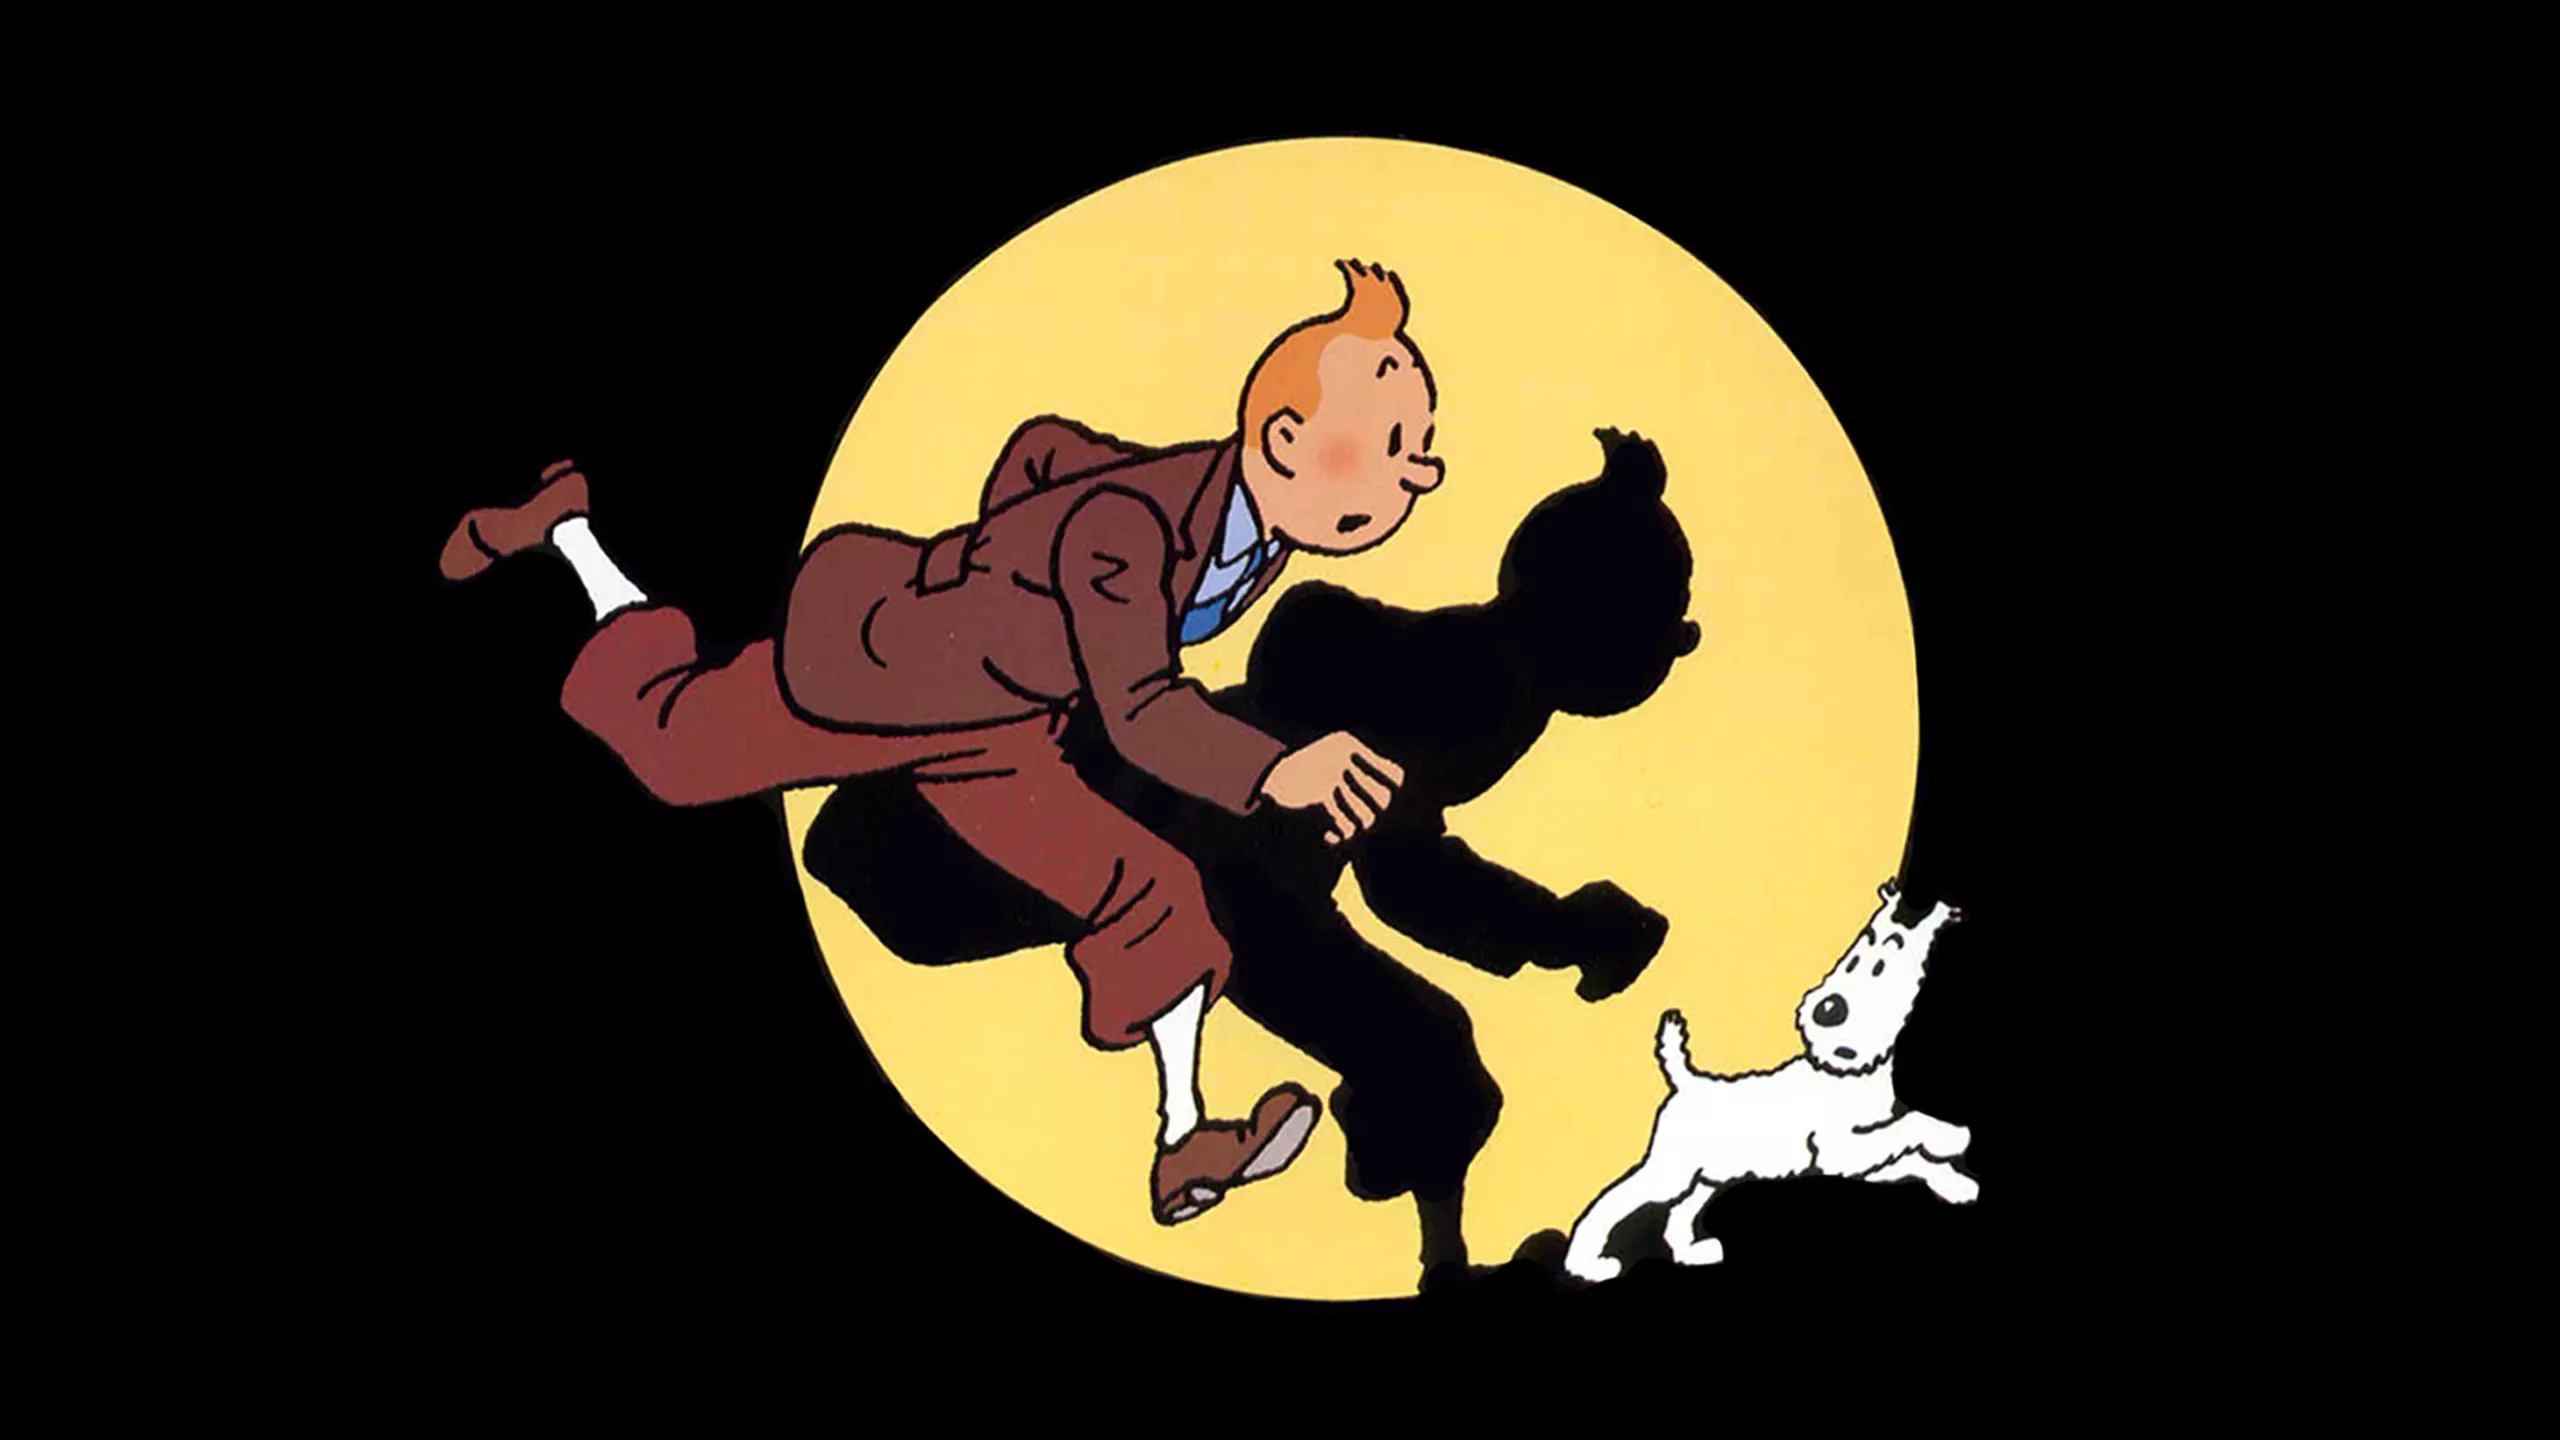 Après 35 ans de pause, le magazine Tintin de retour !